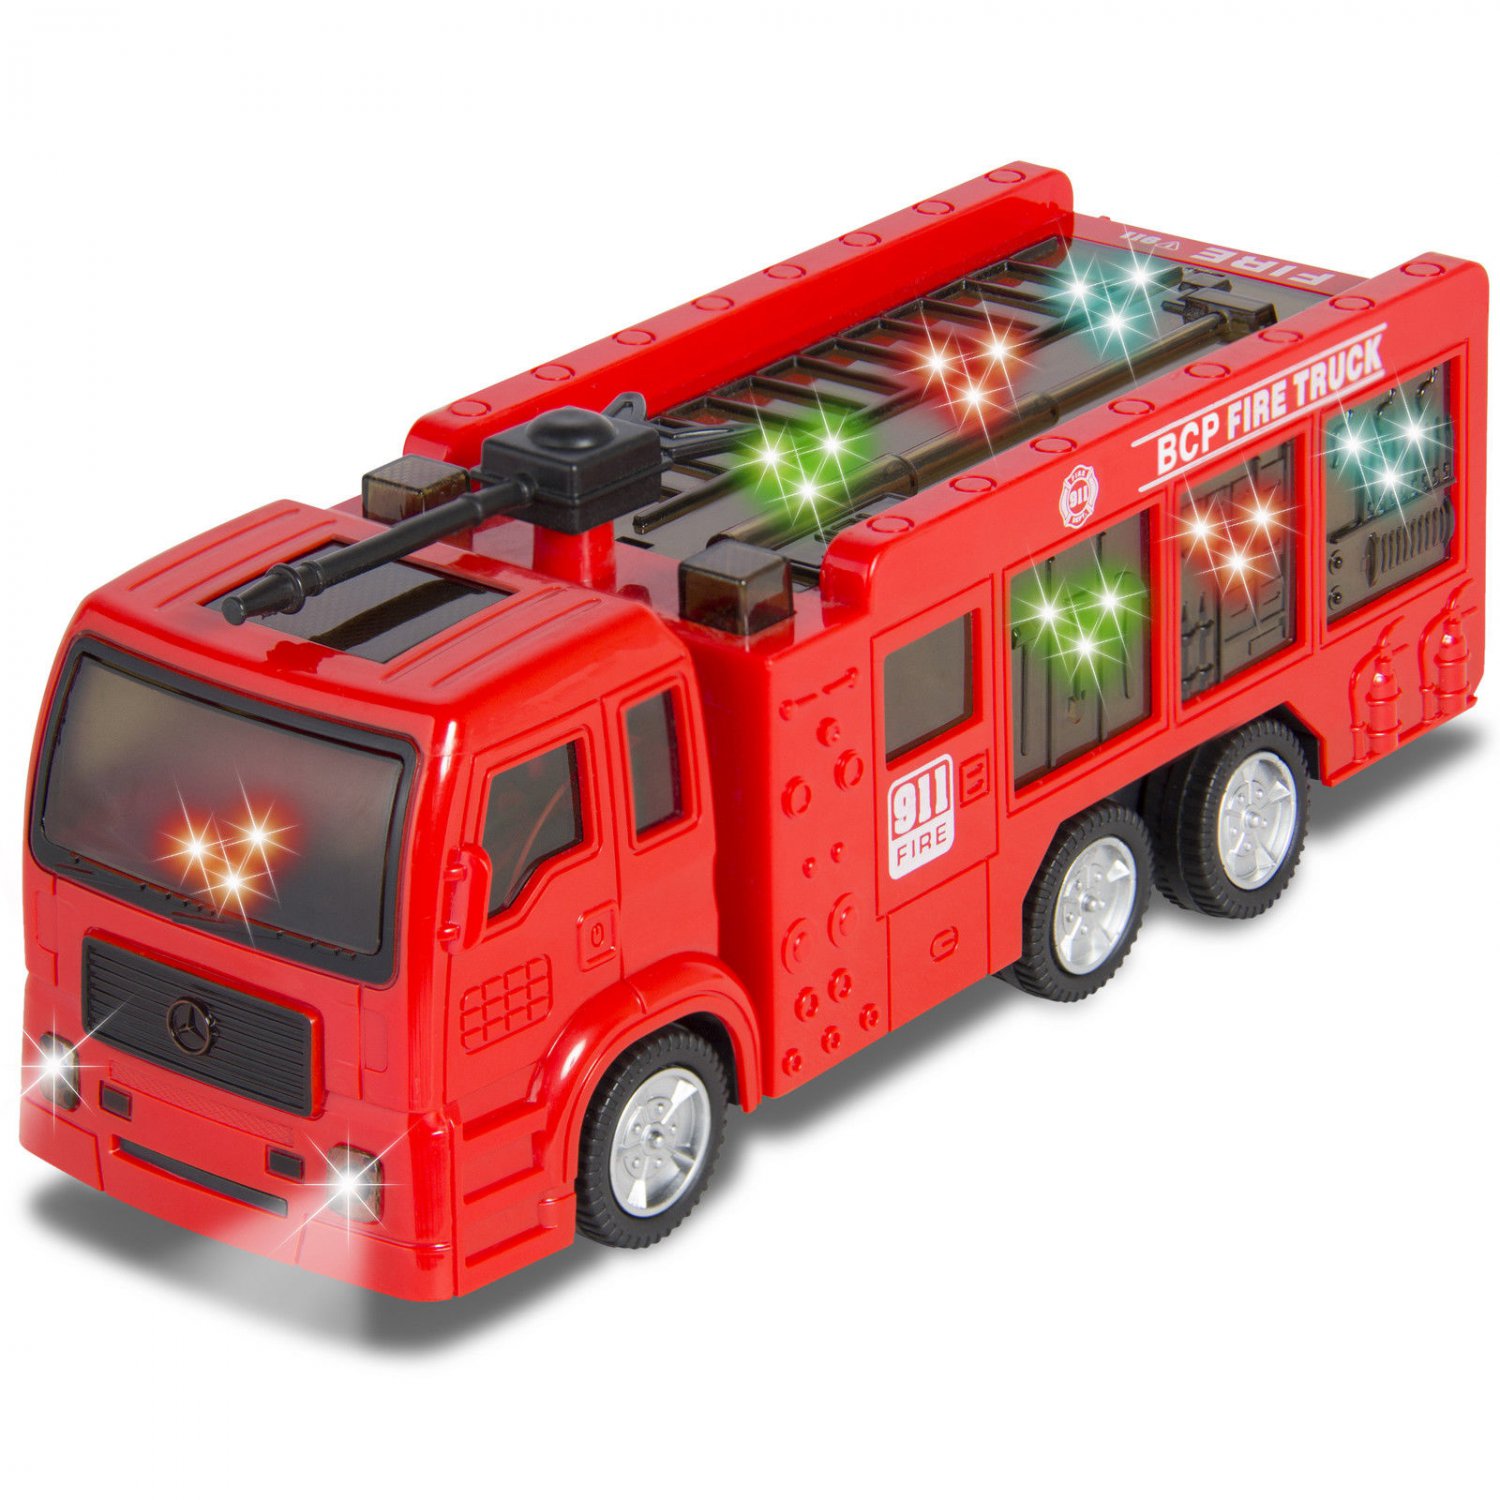 Маленькая пожарная машинка. Машина "Fire Truck" пожарная, 49450. Пожарная машина 5110dks. Машина "Fire Truck" пожарная, 49450 салон. Игрушка пожарная машина у450.